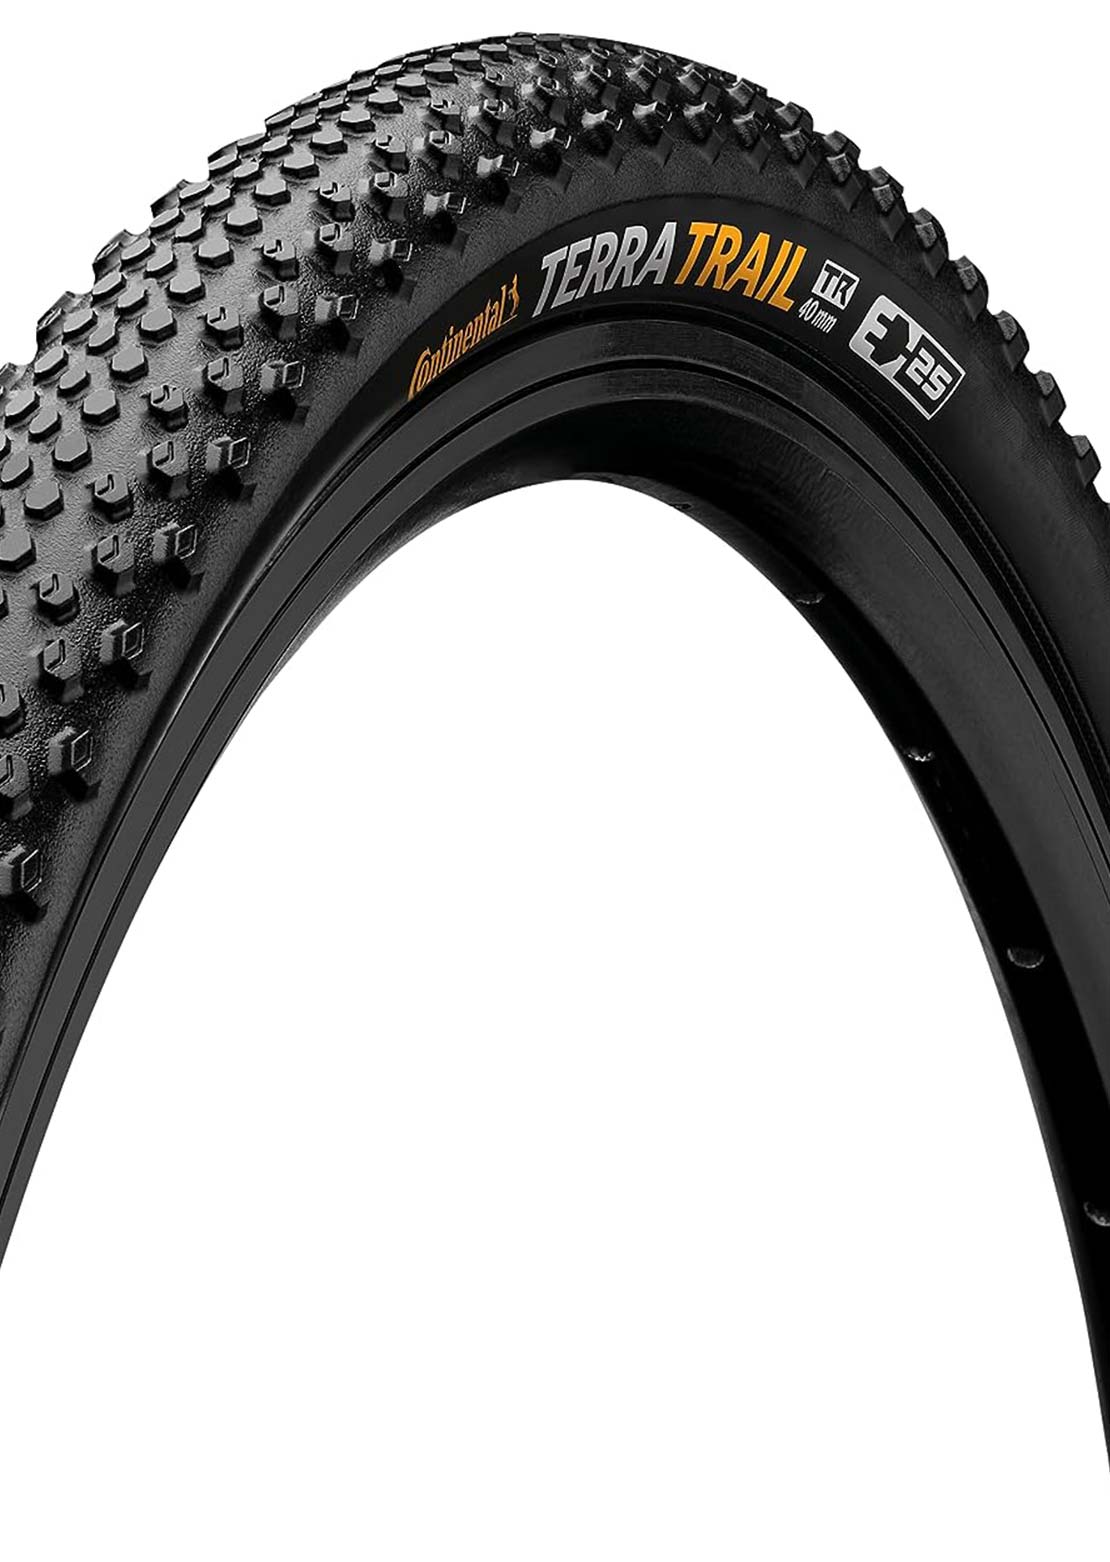 Continental Terra Trail Shieldwall Gravel Bike Tires - 700mm x 40mm